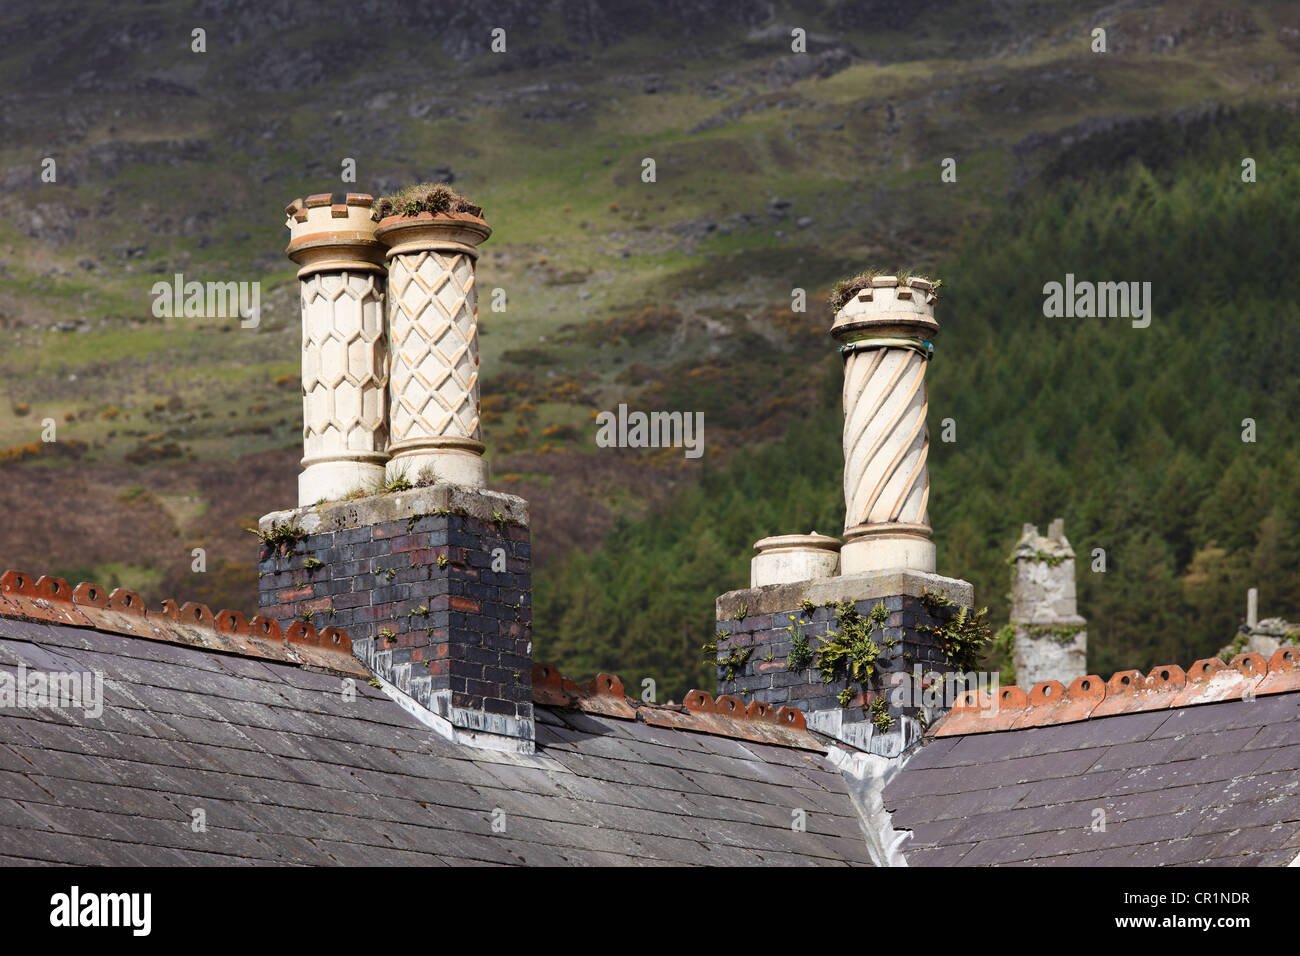 Une cheminée ouvragée, Carlingford, comté de Louth, République d'Irlande, Europe Banque D'Images